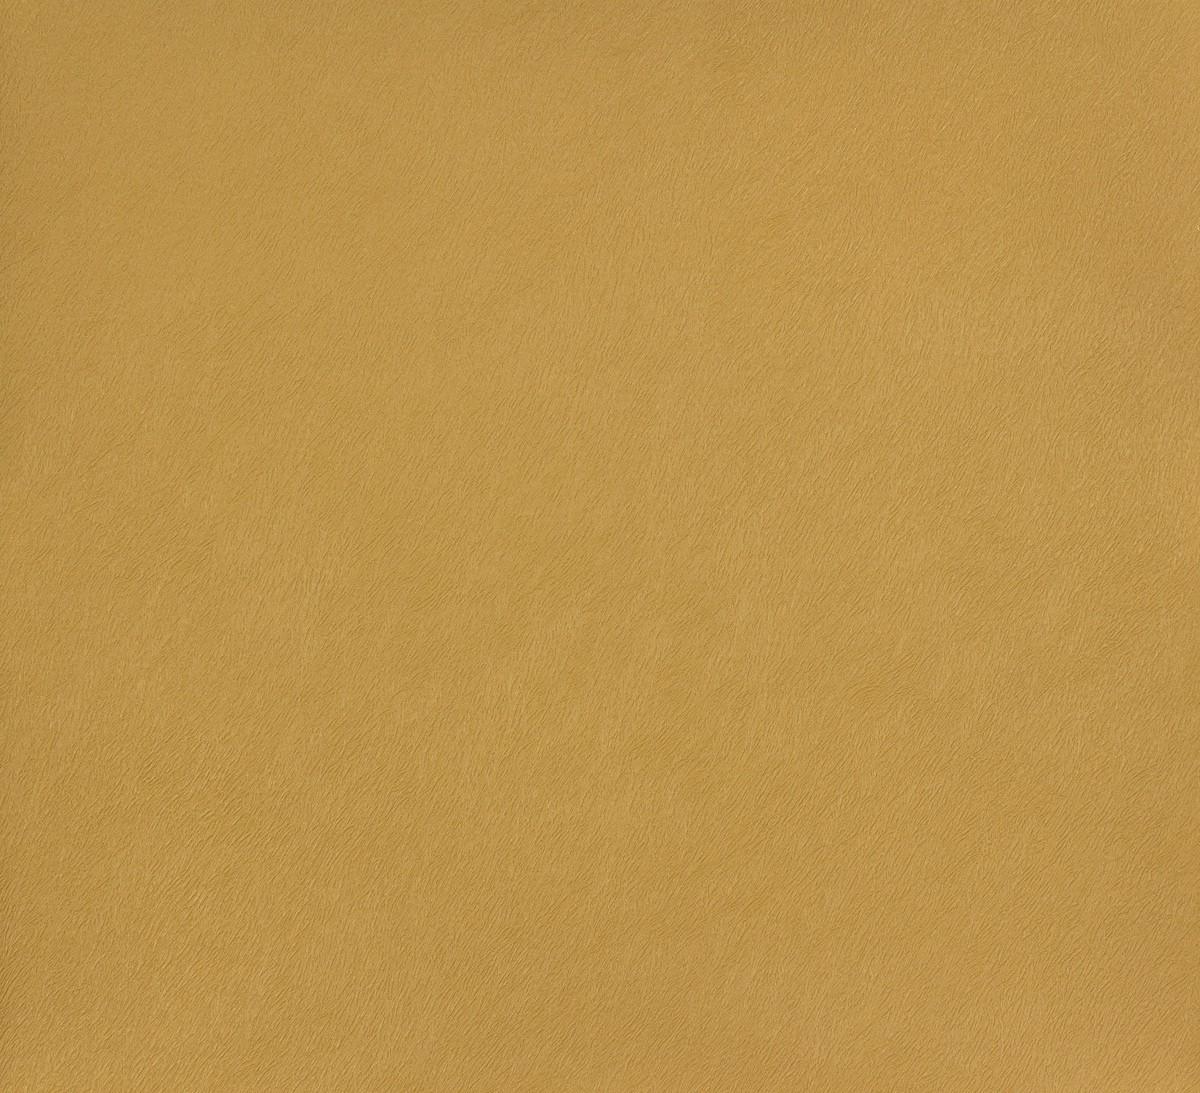 Non Woven Wallpaper Rasch Black Forest 514049 Plain Structure Mustard Yellow Ocher